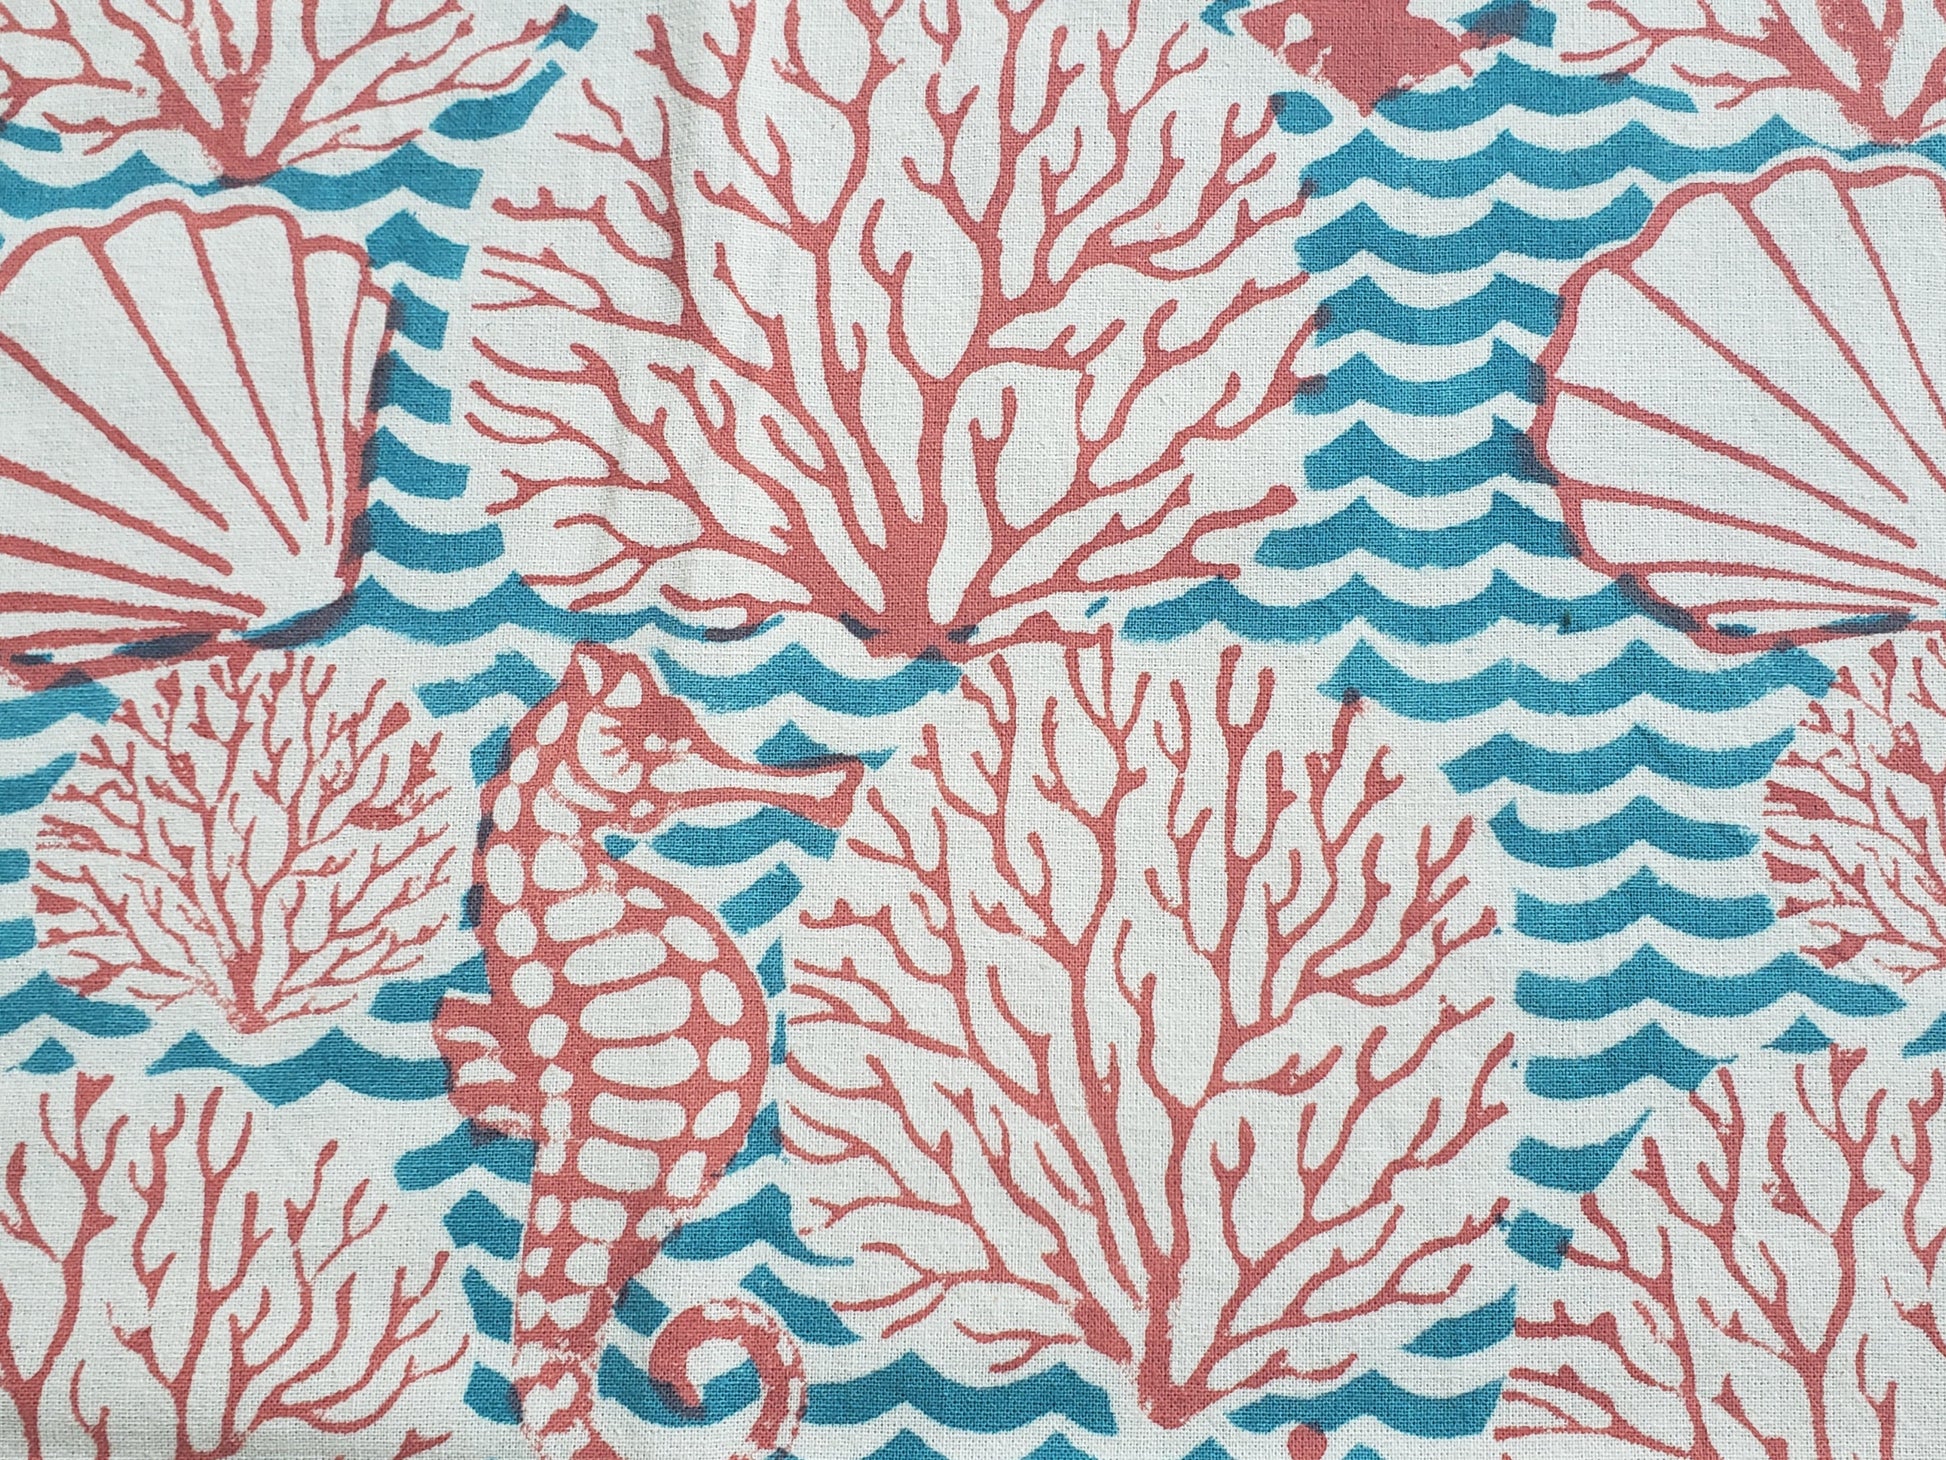 Detalle de estampado de sobrecama 100% algodón estampado a mano, diseño de ondas color turquesa con corales y conchas de mar en color coral. Hecho en la India.